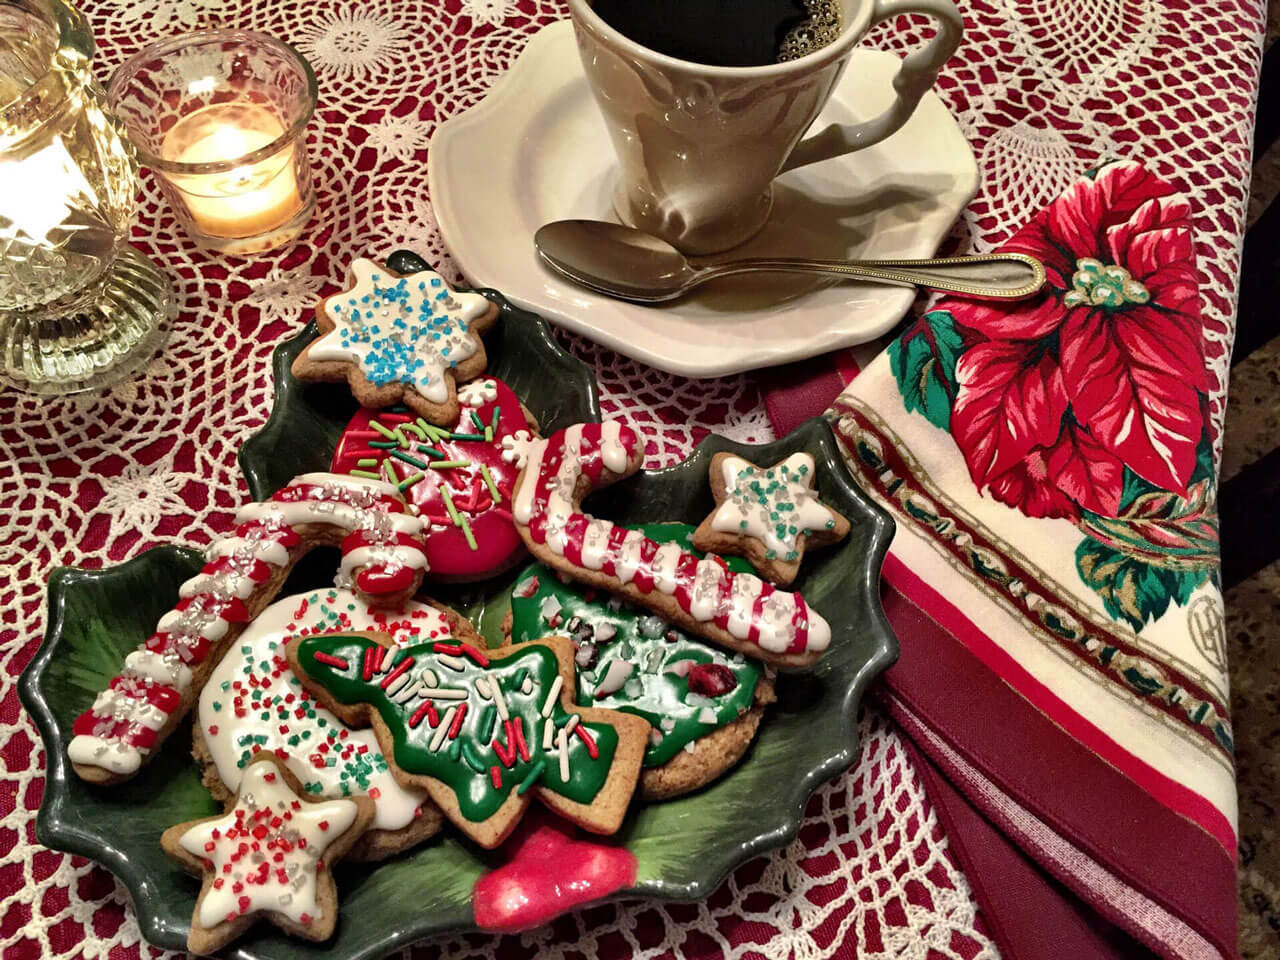 Gingered Christmas Sprinkle Cookies